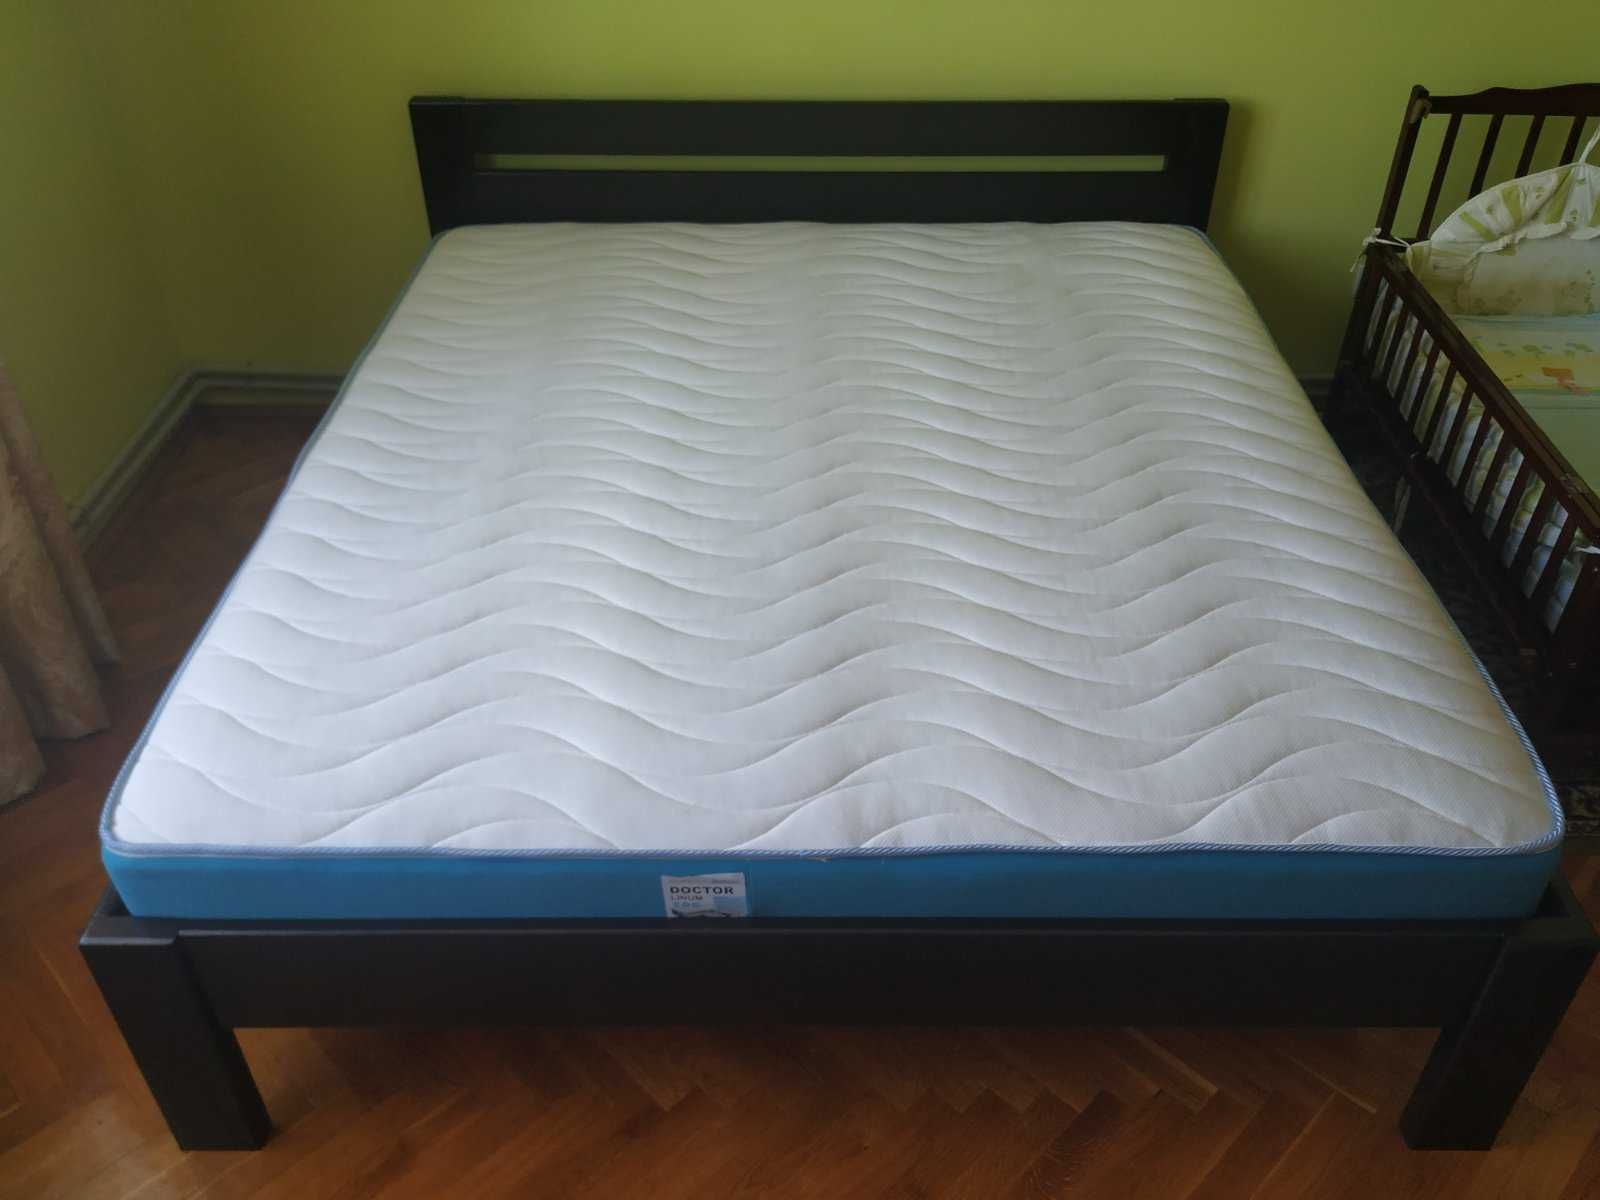 Ліжко під замовлення масиву ясена, дуба ціна на першому фото 17000грн